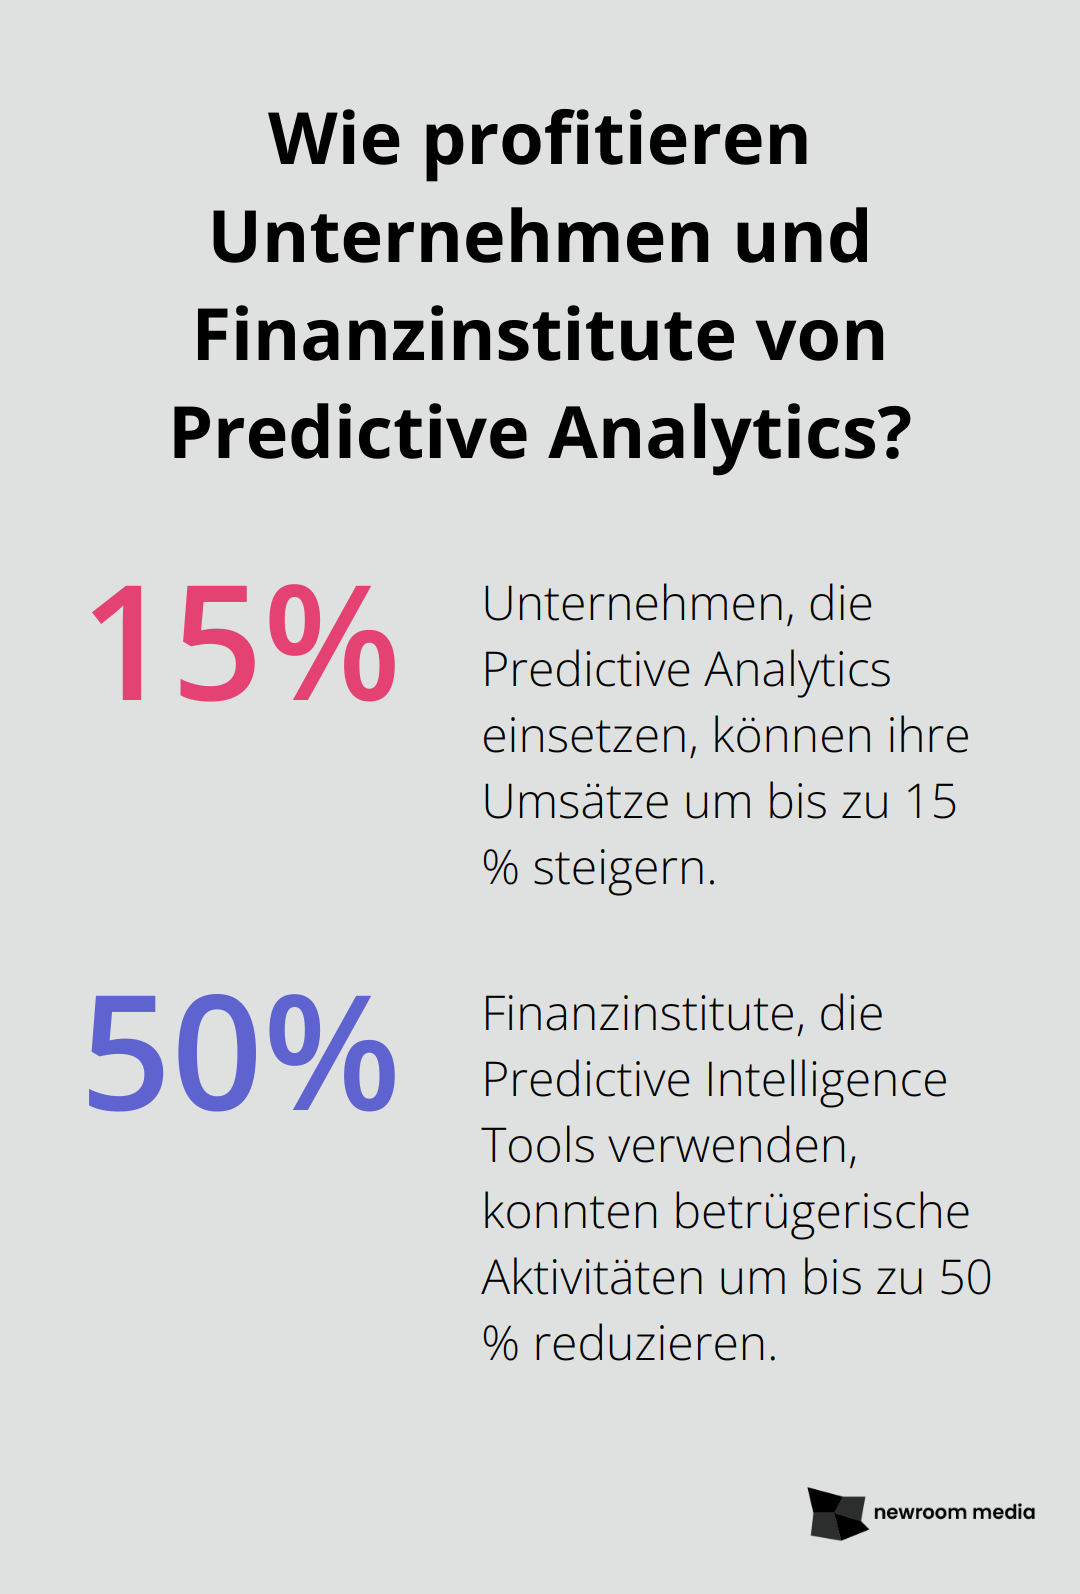 Fact - Wie profitieren Unternehmen und Finanzinstitute von Predictive Analytics?